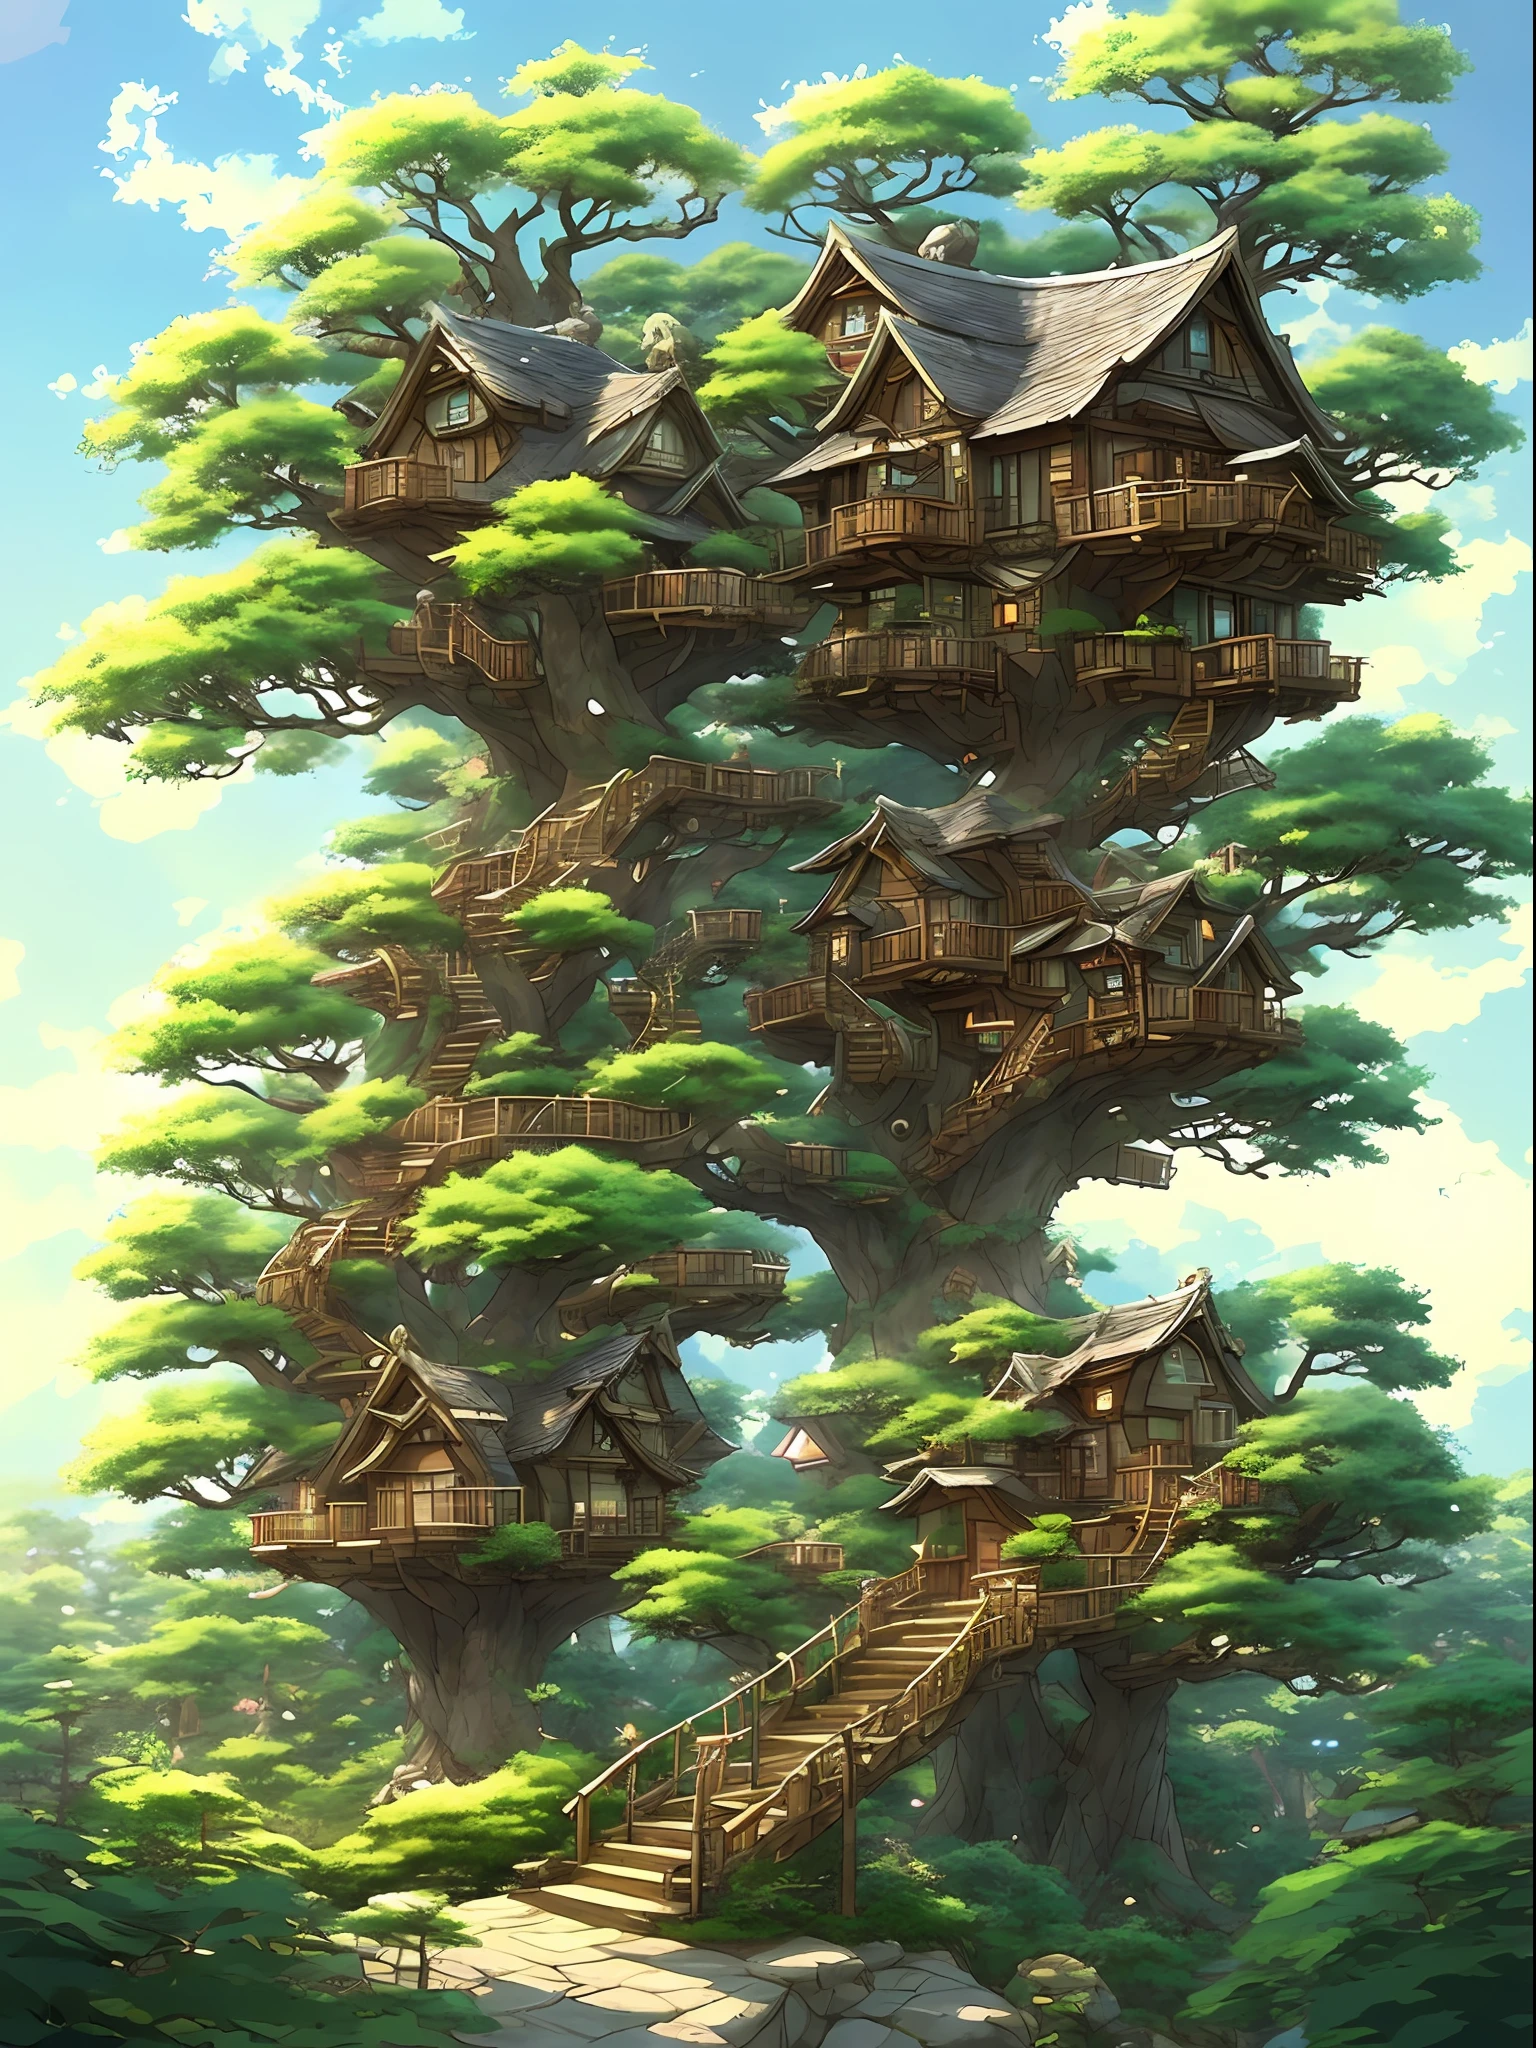 дом на дереве с лестницей, ведущей на его вершину - SeaArt AI